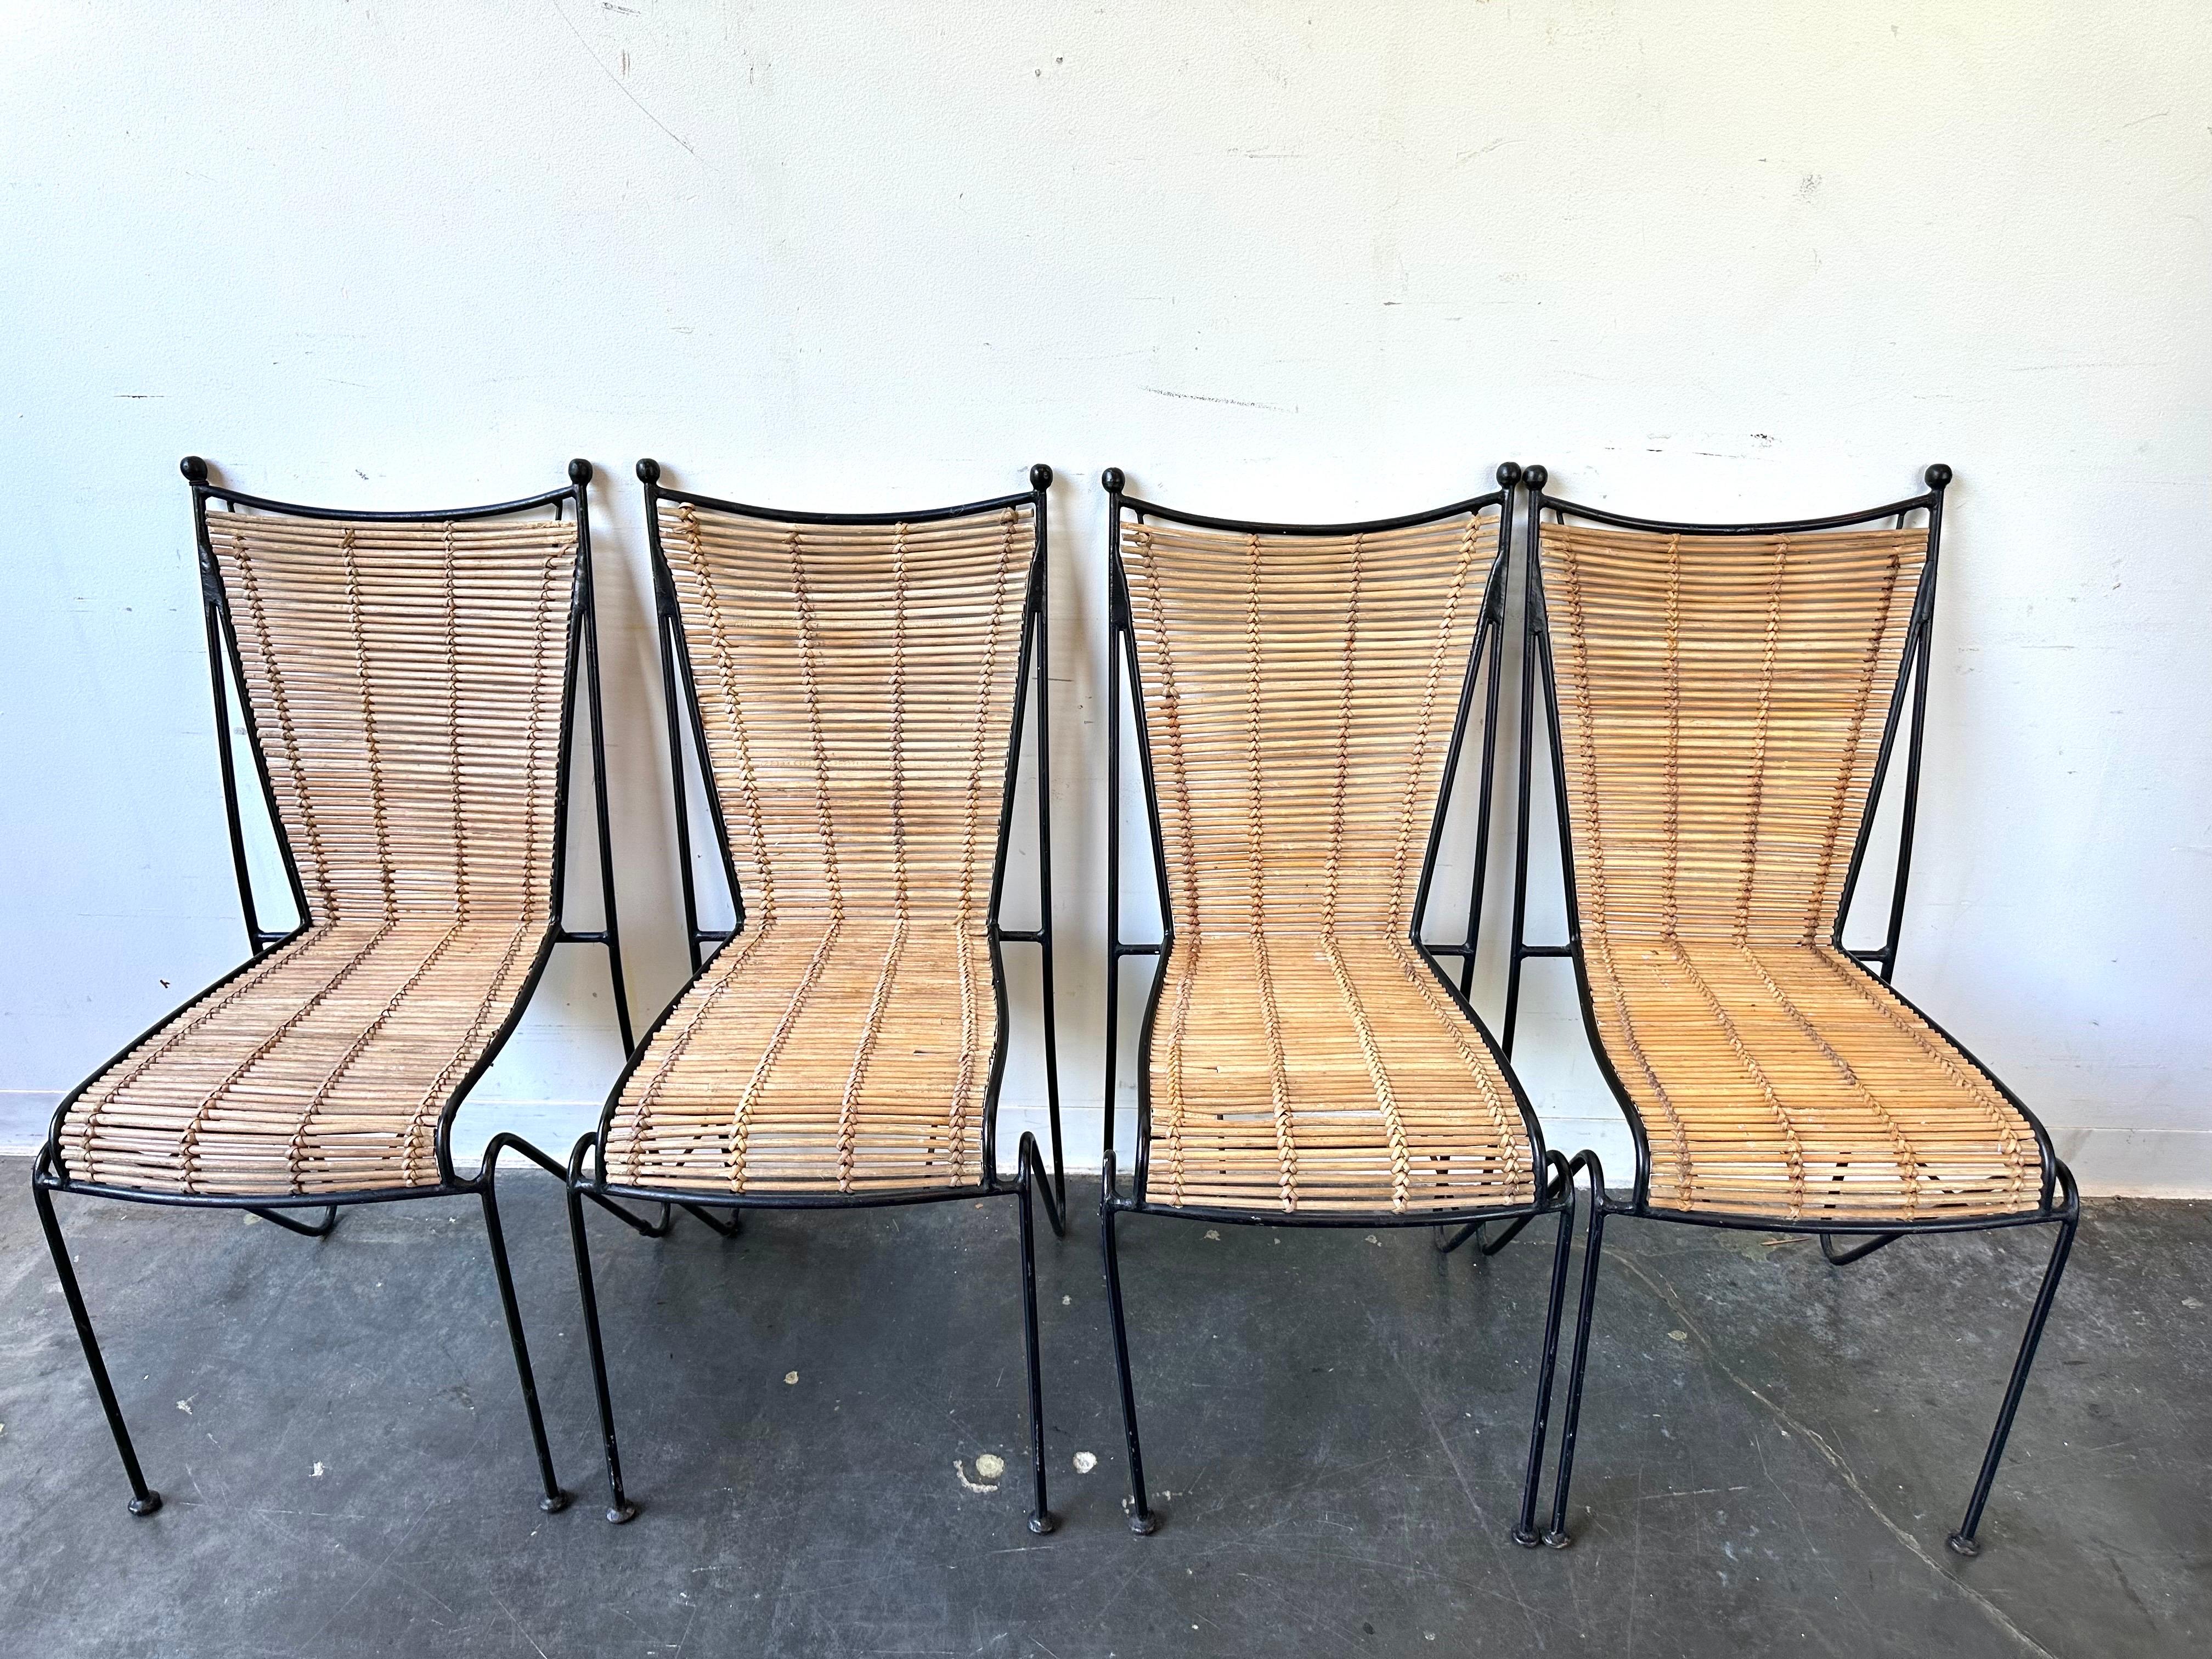 Ensemble de 4 chaises d'appoint ou de salle à manger en fer forgé et rotin par Pipsan Saarinen Swanson pour Ficks Reed, vers les années 1960. Silhouette magnifique. Excellente conception et artisanat exquis. 